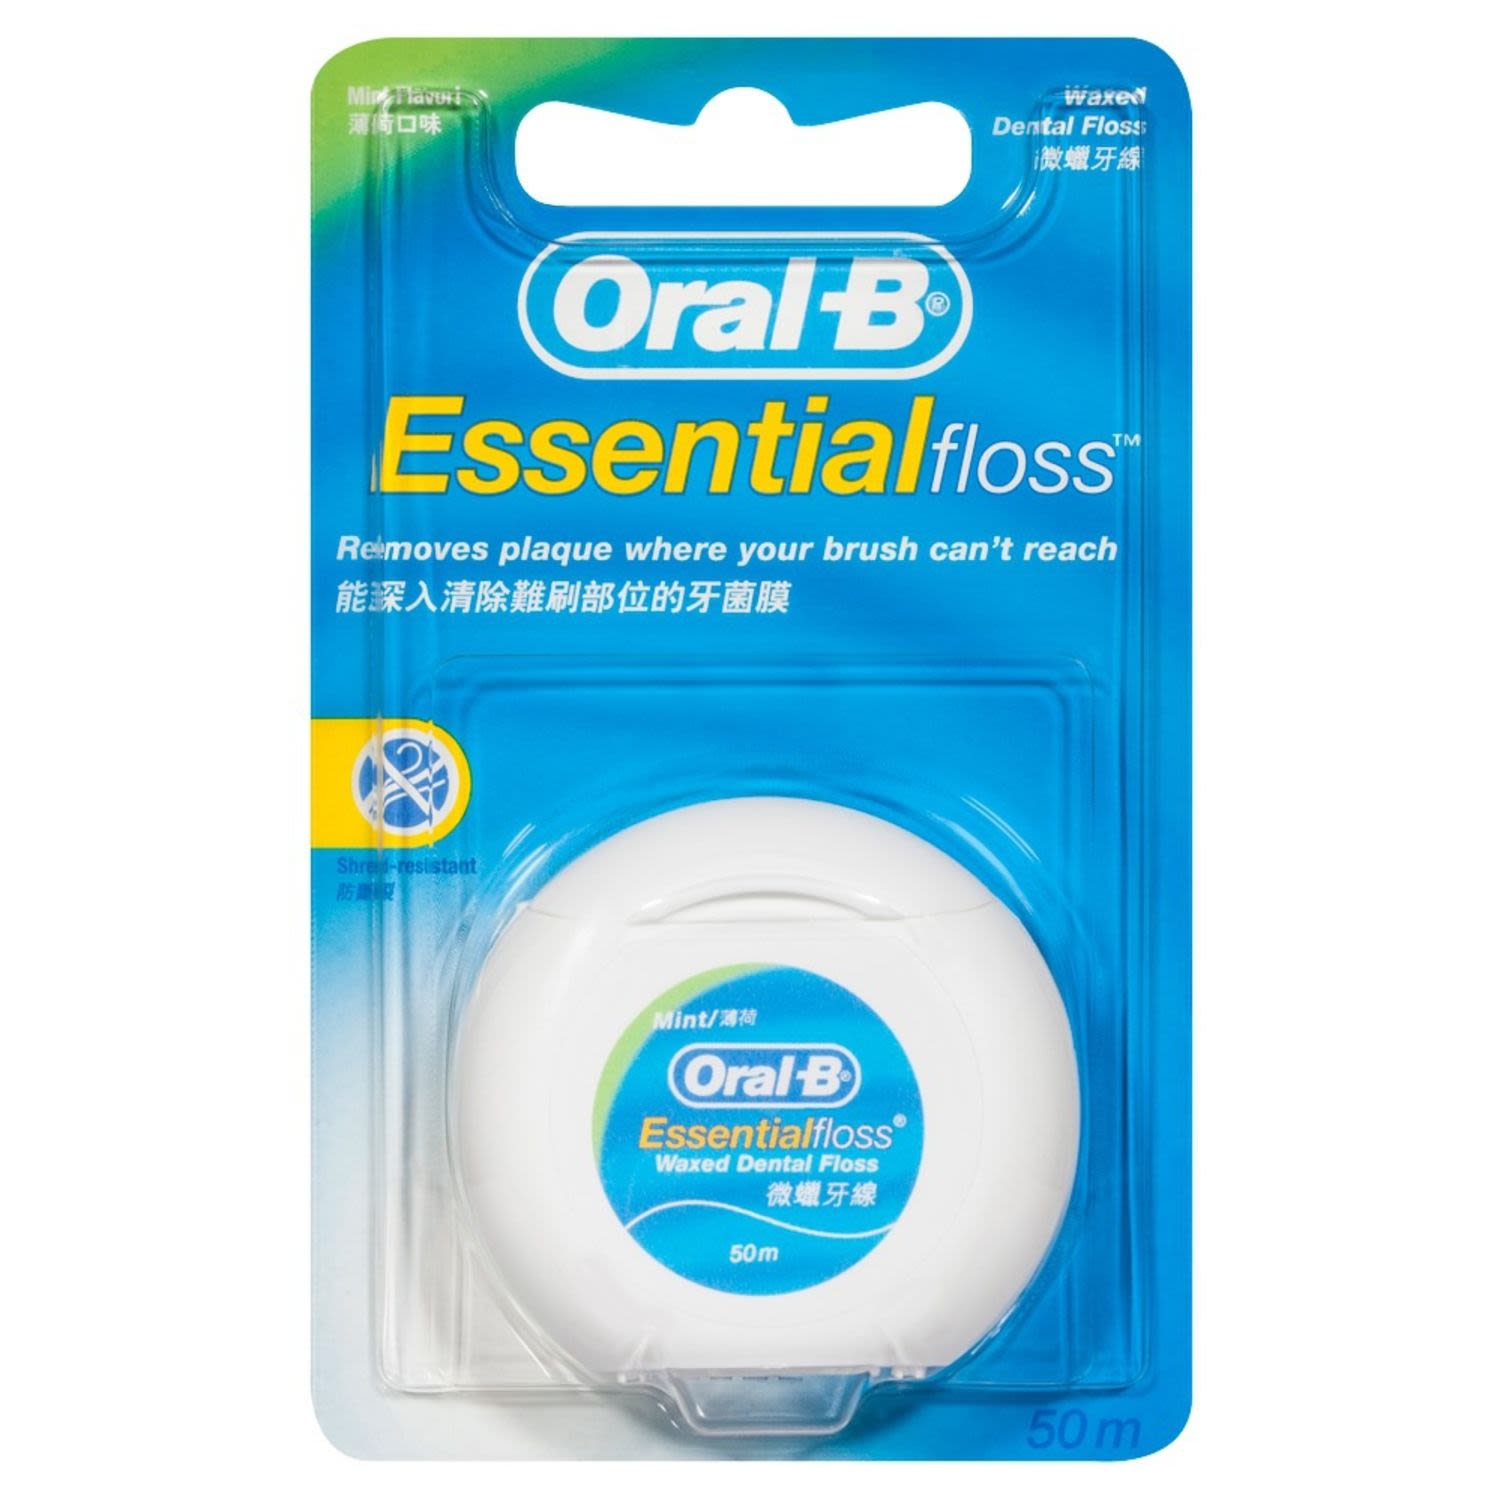 Oral-B Essential Waxed Dental Floss Mint Flavour 50m, 1 Each